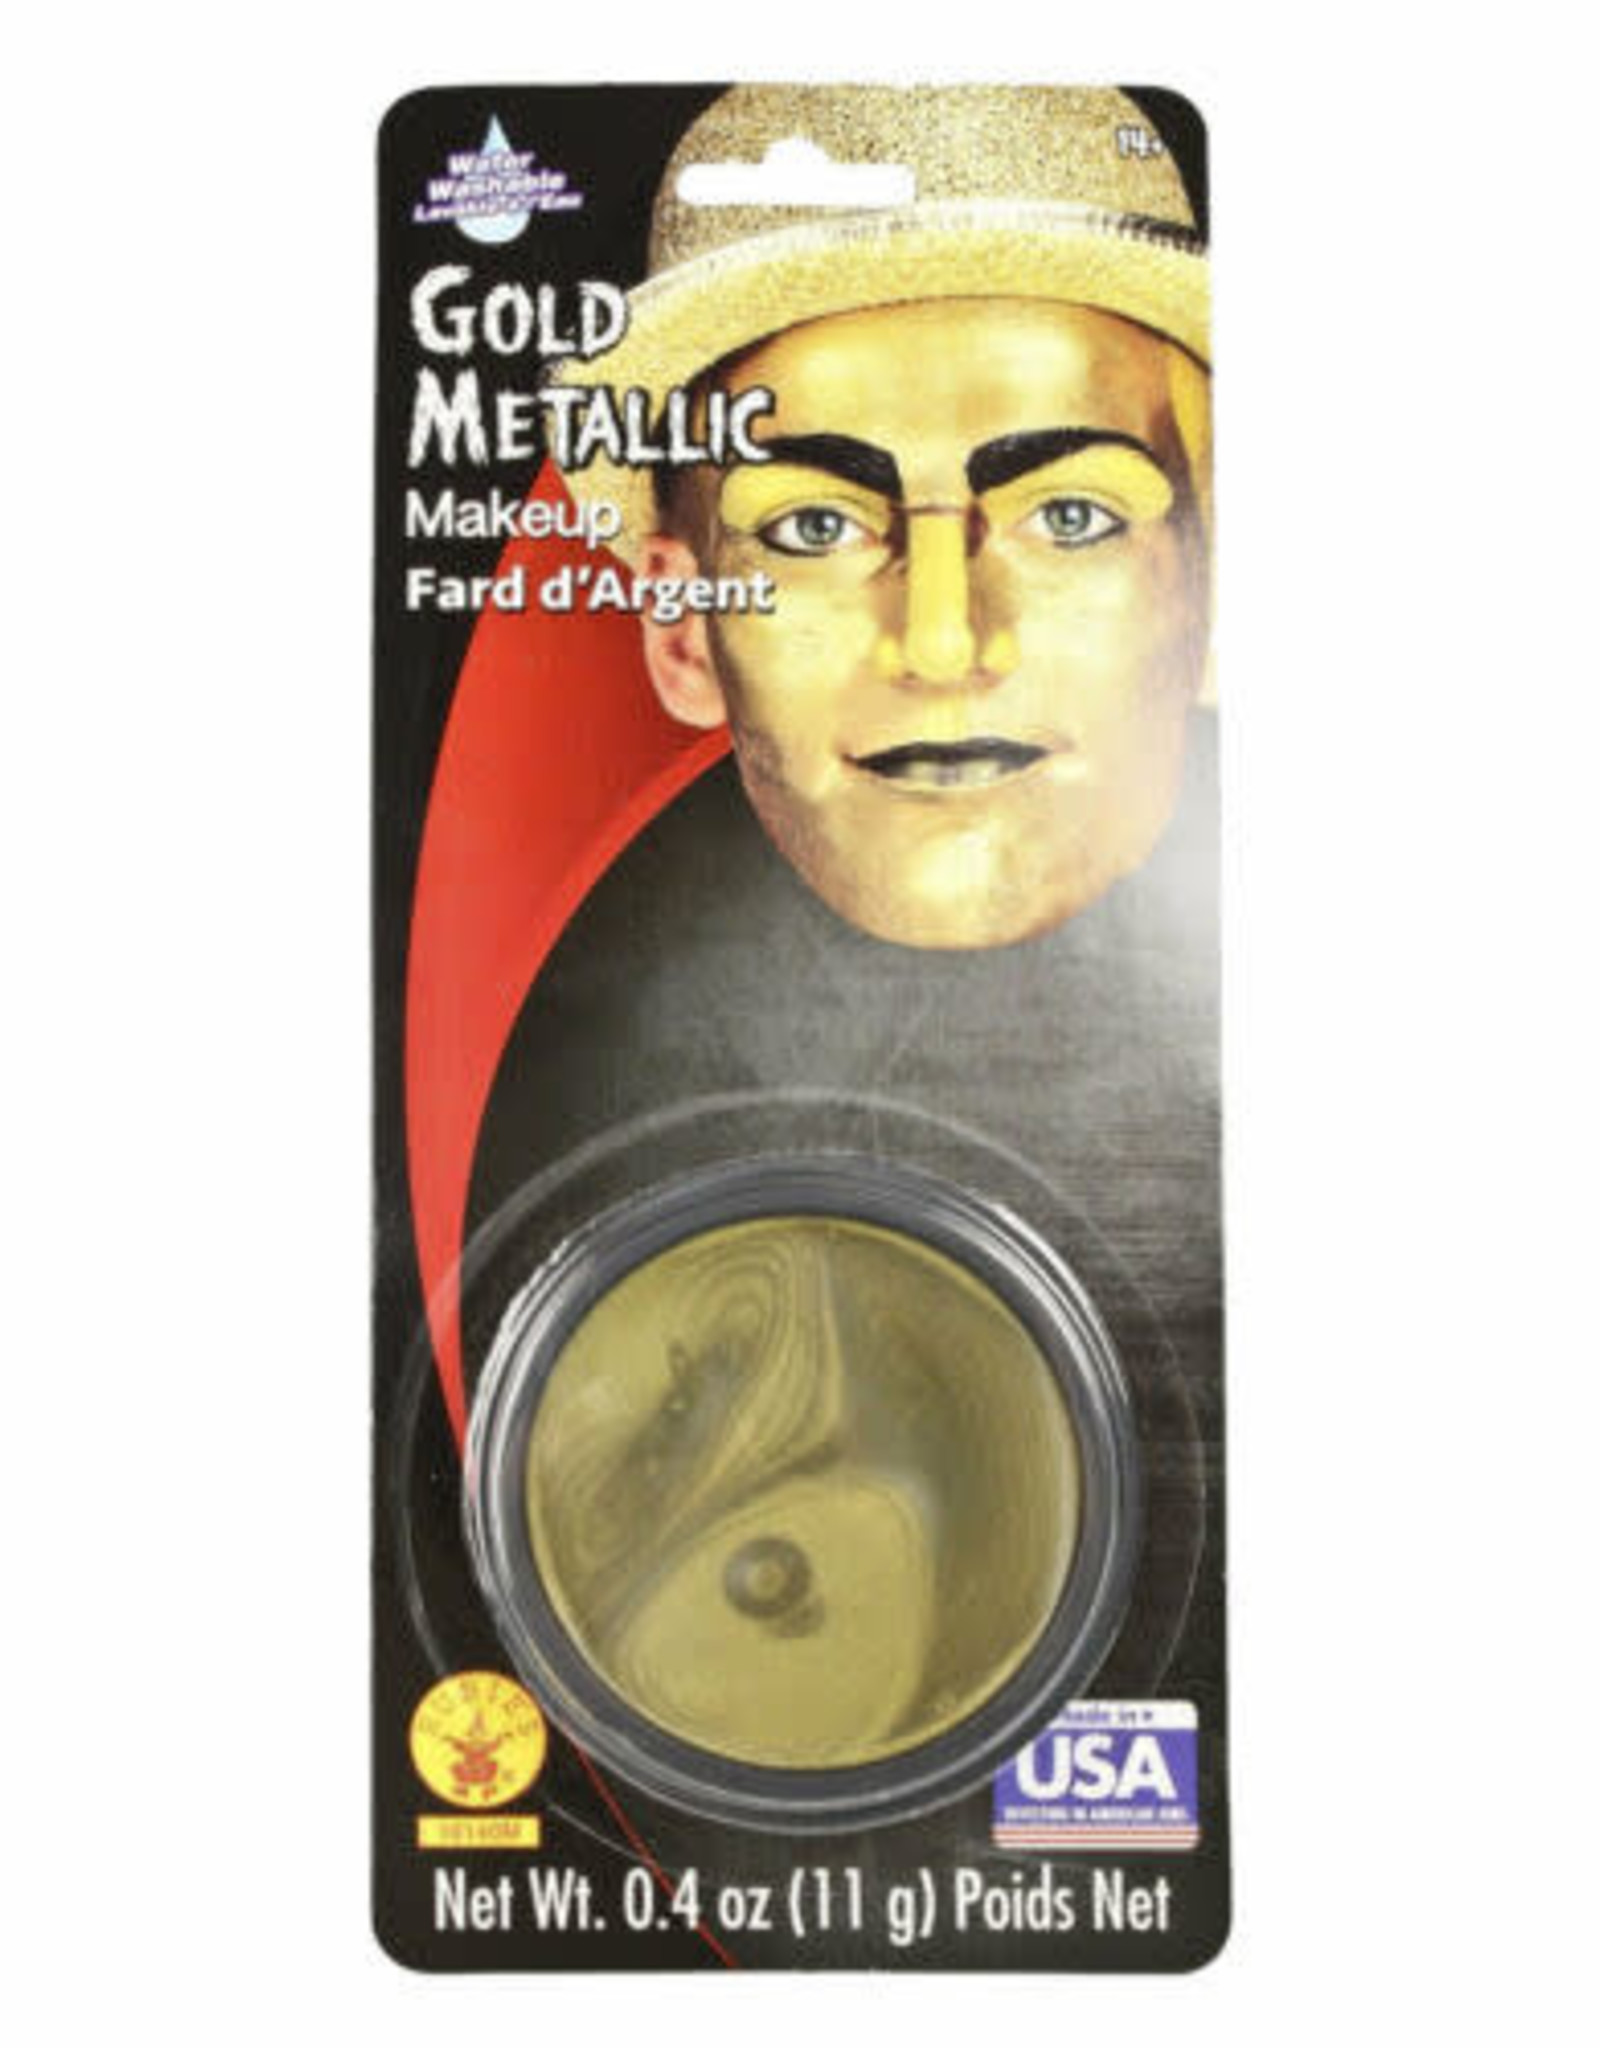 gold metallic makeup